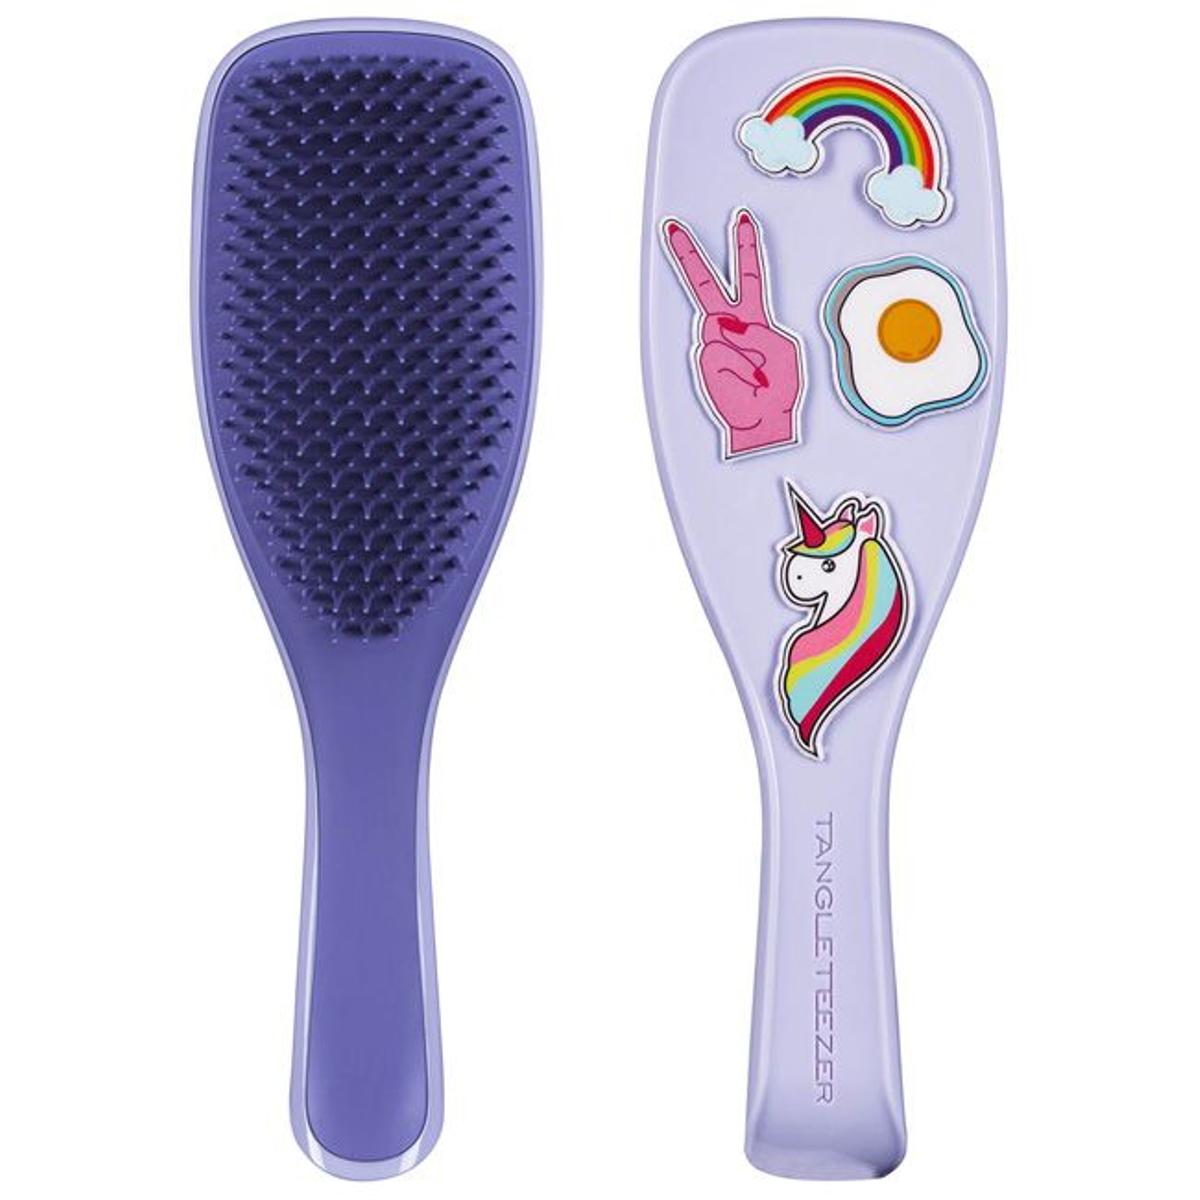 Cepillo para cabello húmedo anti-roturas, de Tangle Teezer